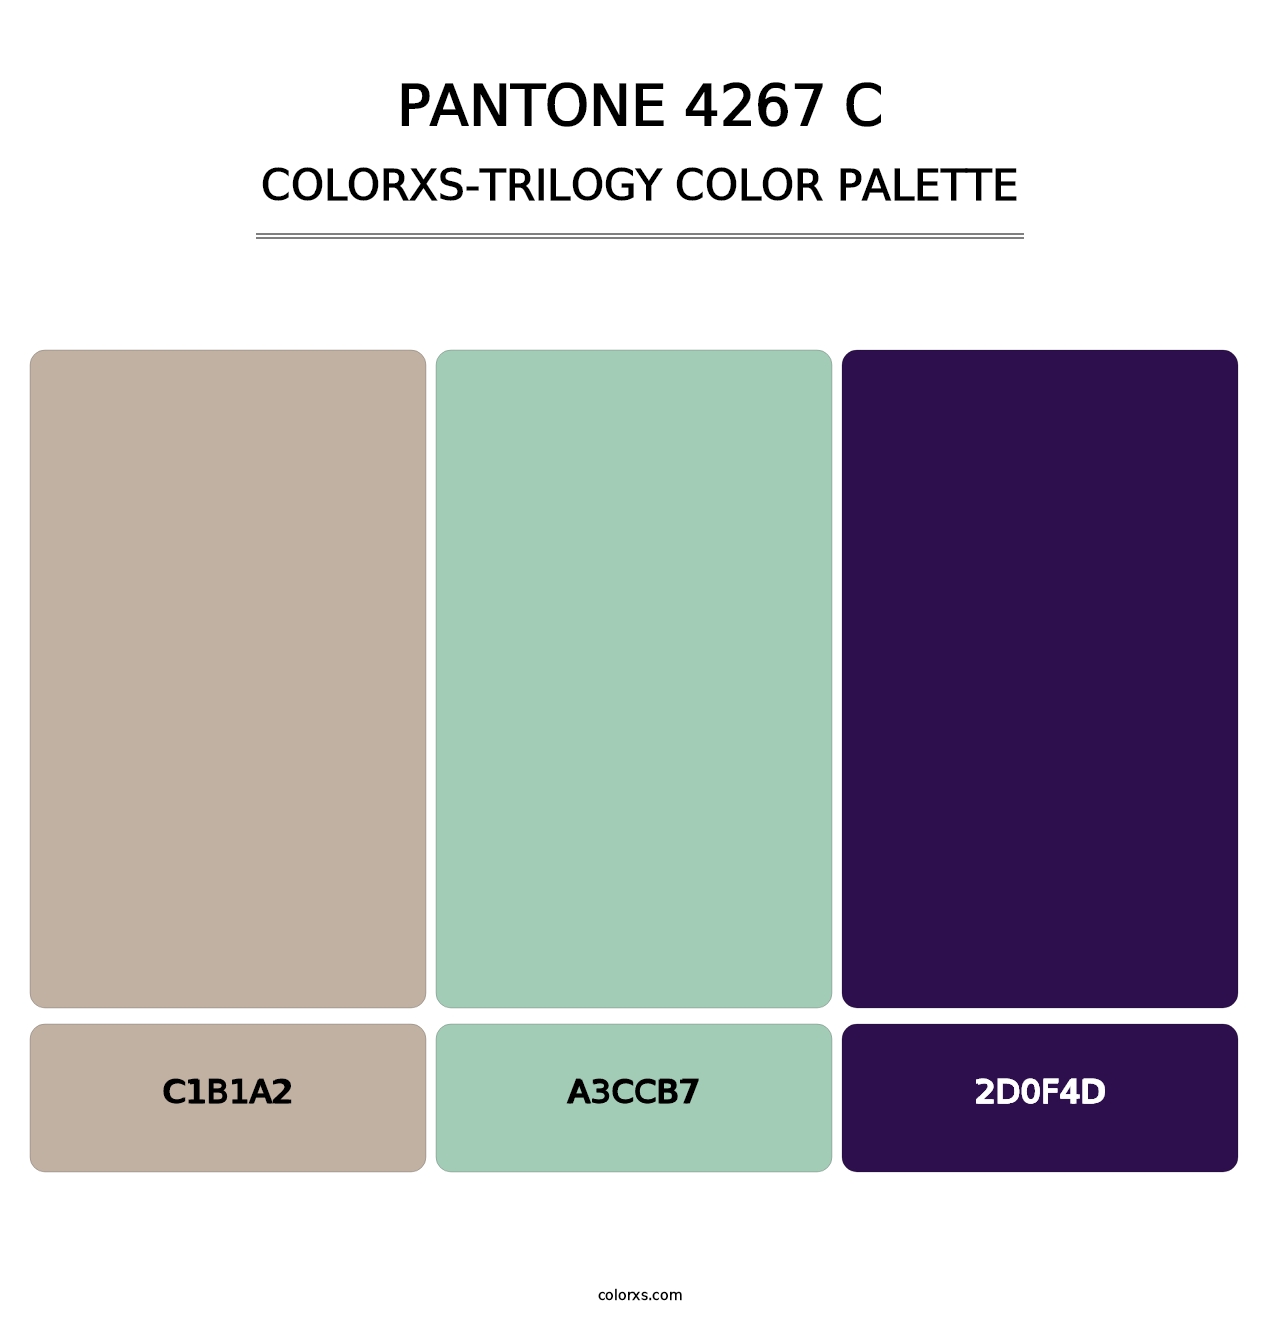 PANTONE 4267 C - Colorxs Trilogy Palette